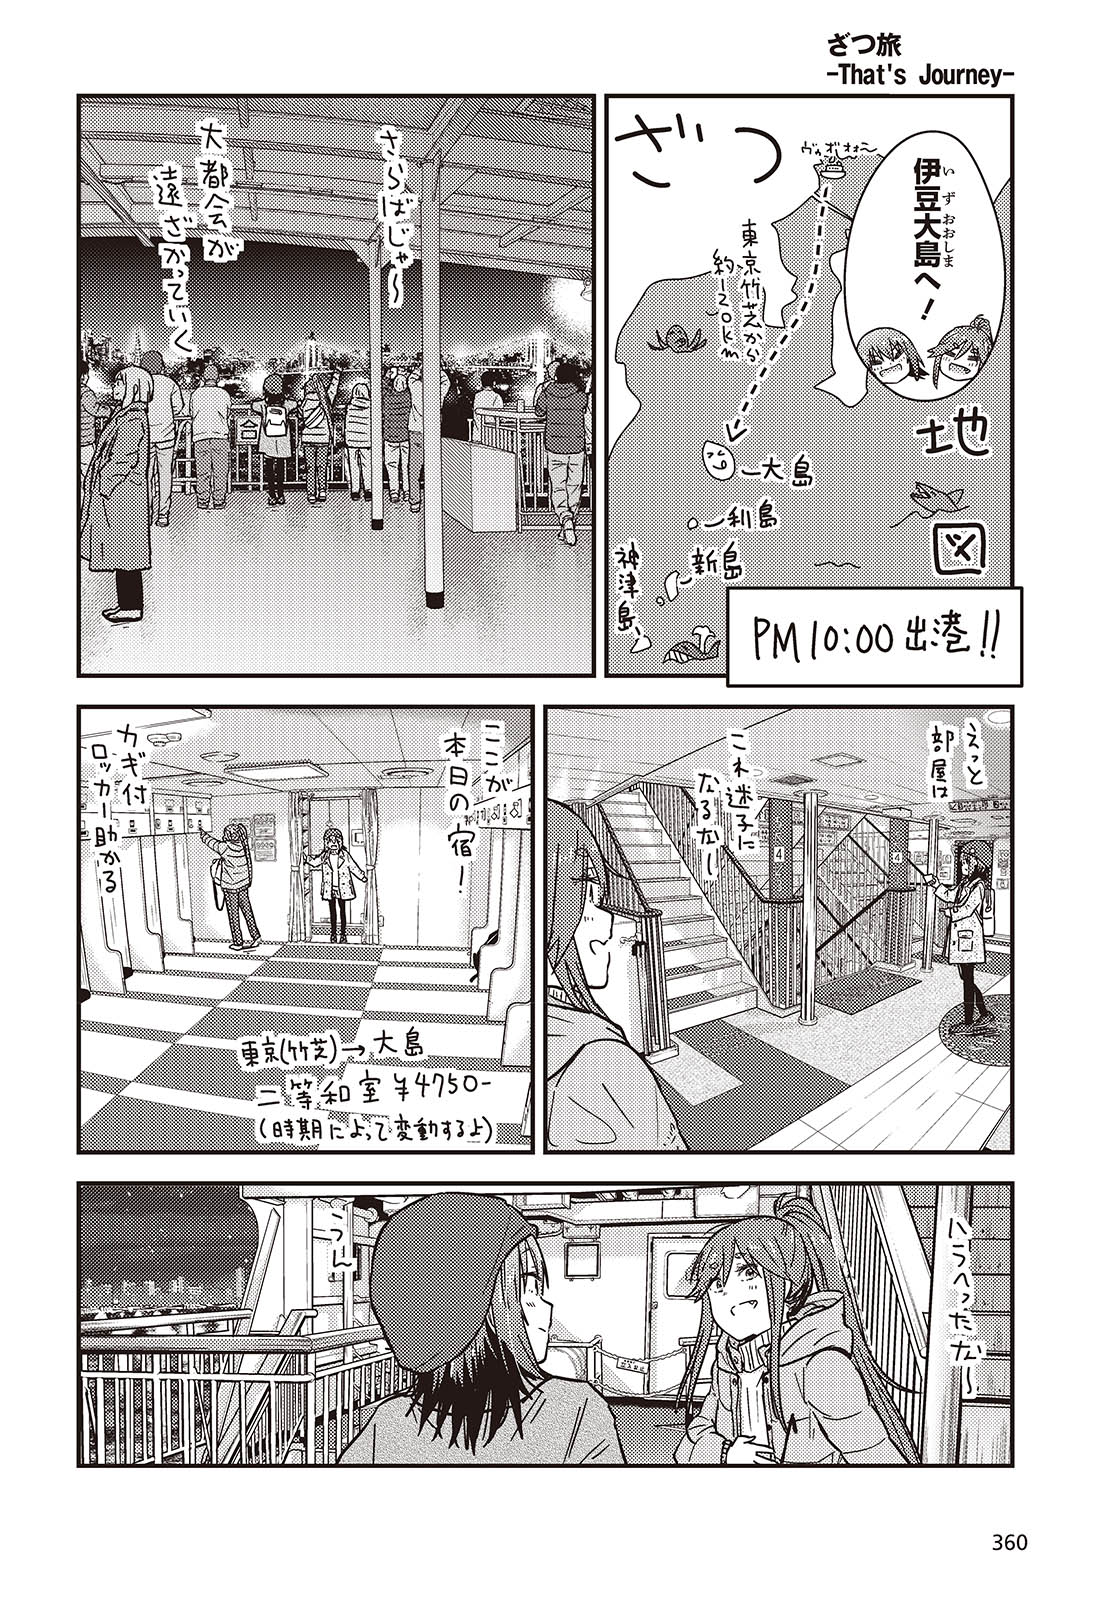 ざつ旅–That?s Journey– 第37話 - Page 4